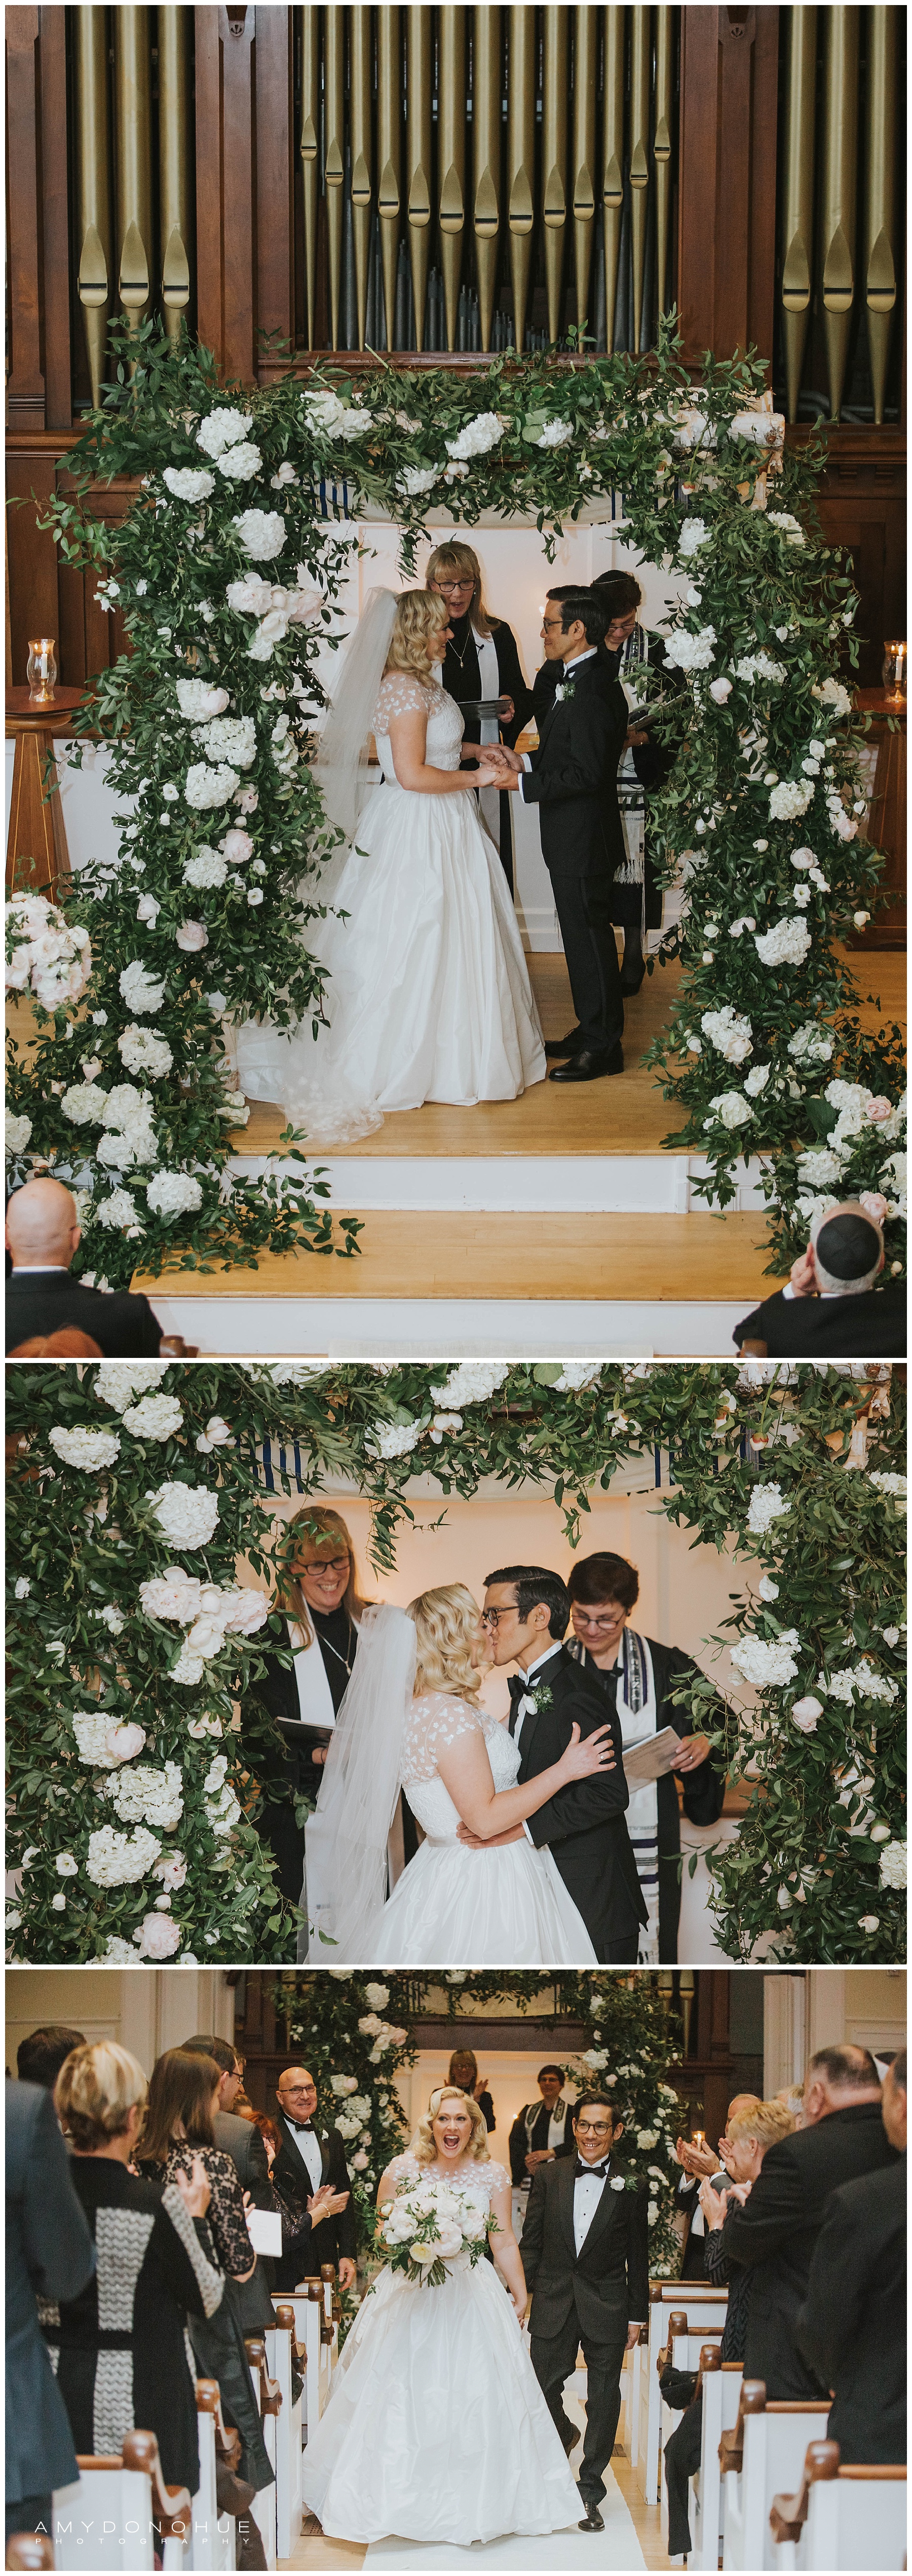 Ceremony Photos | Vermont Wedding Photographer